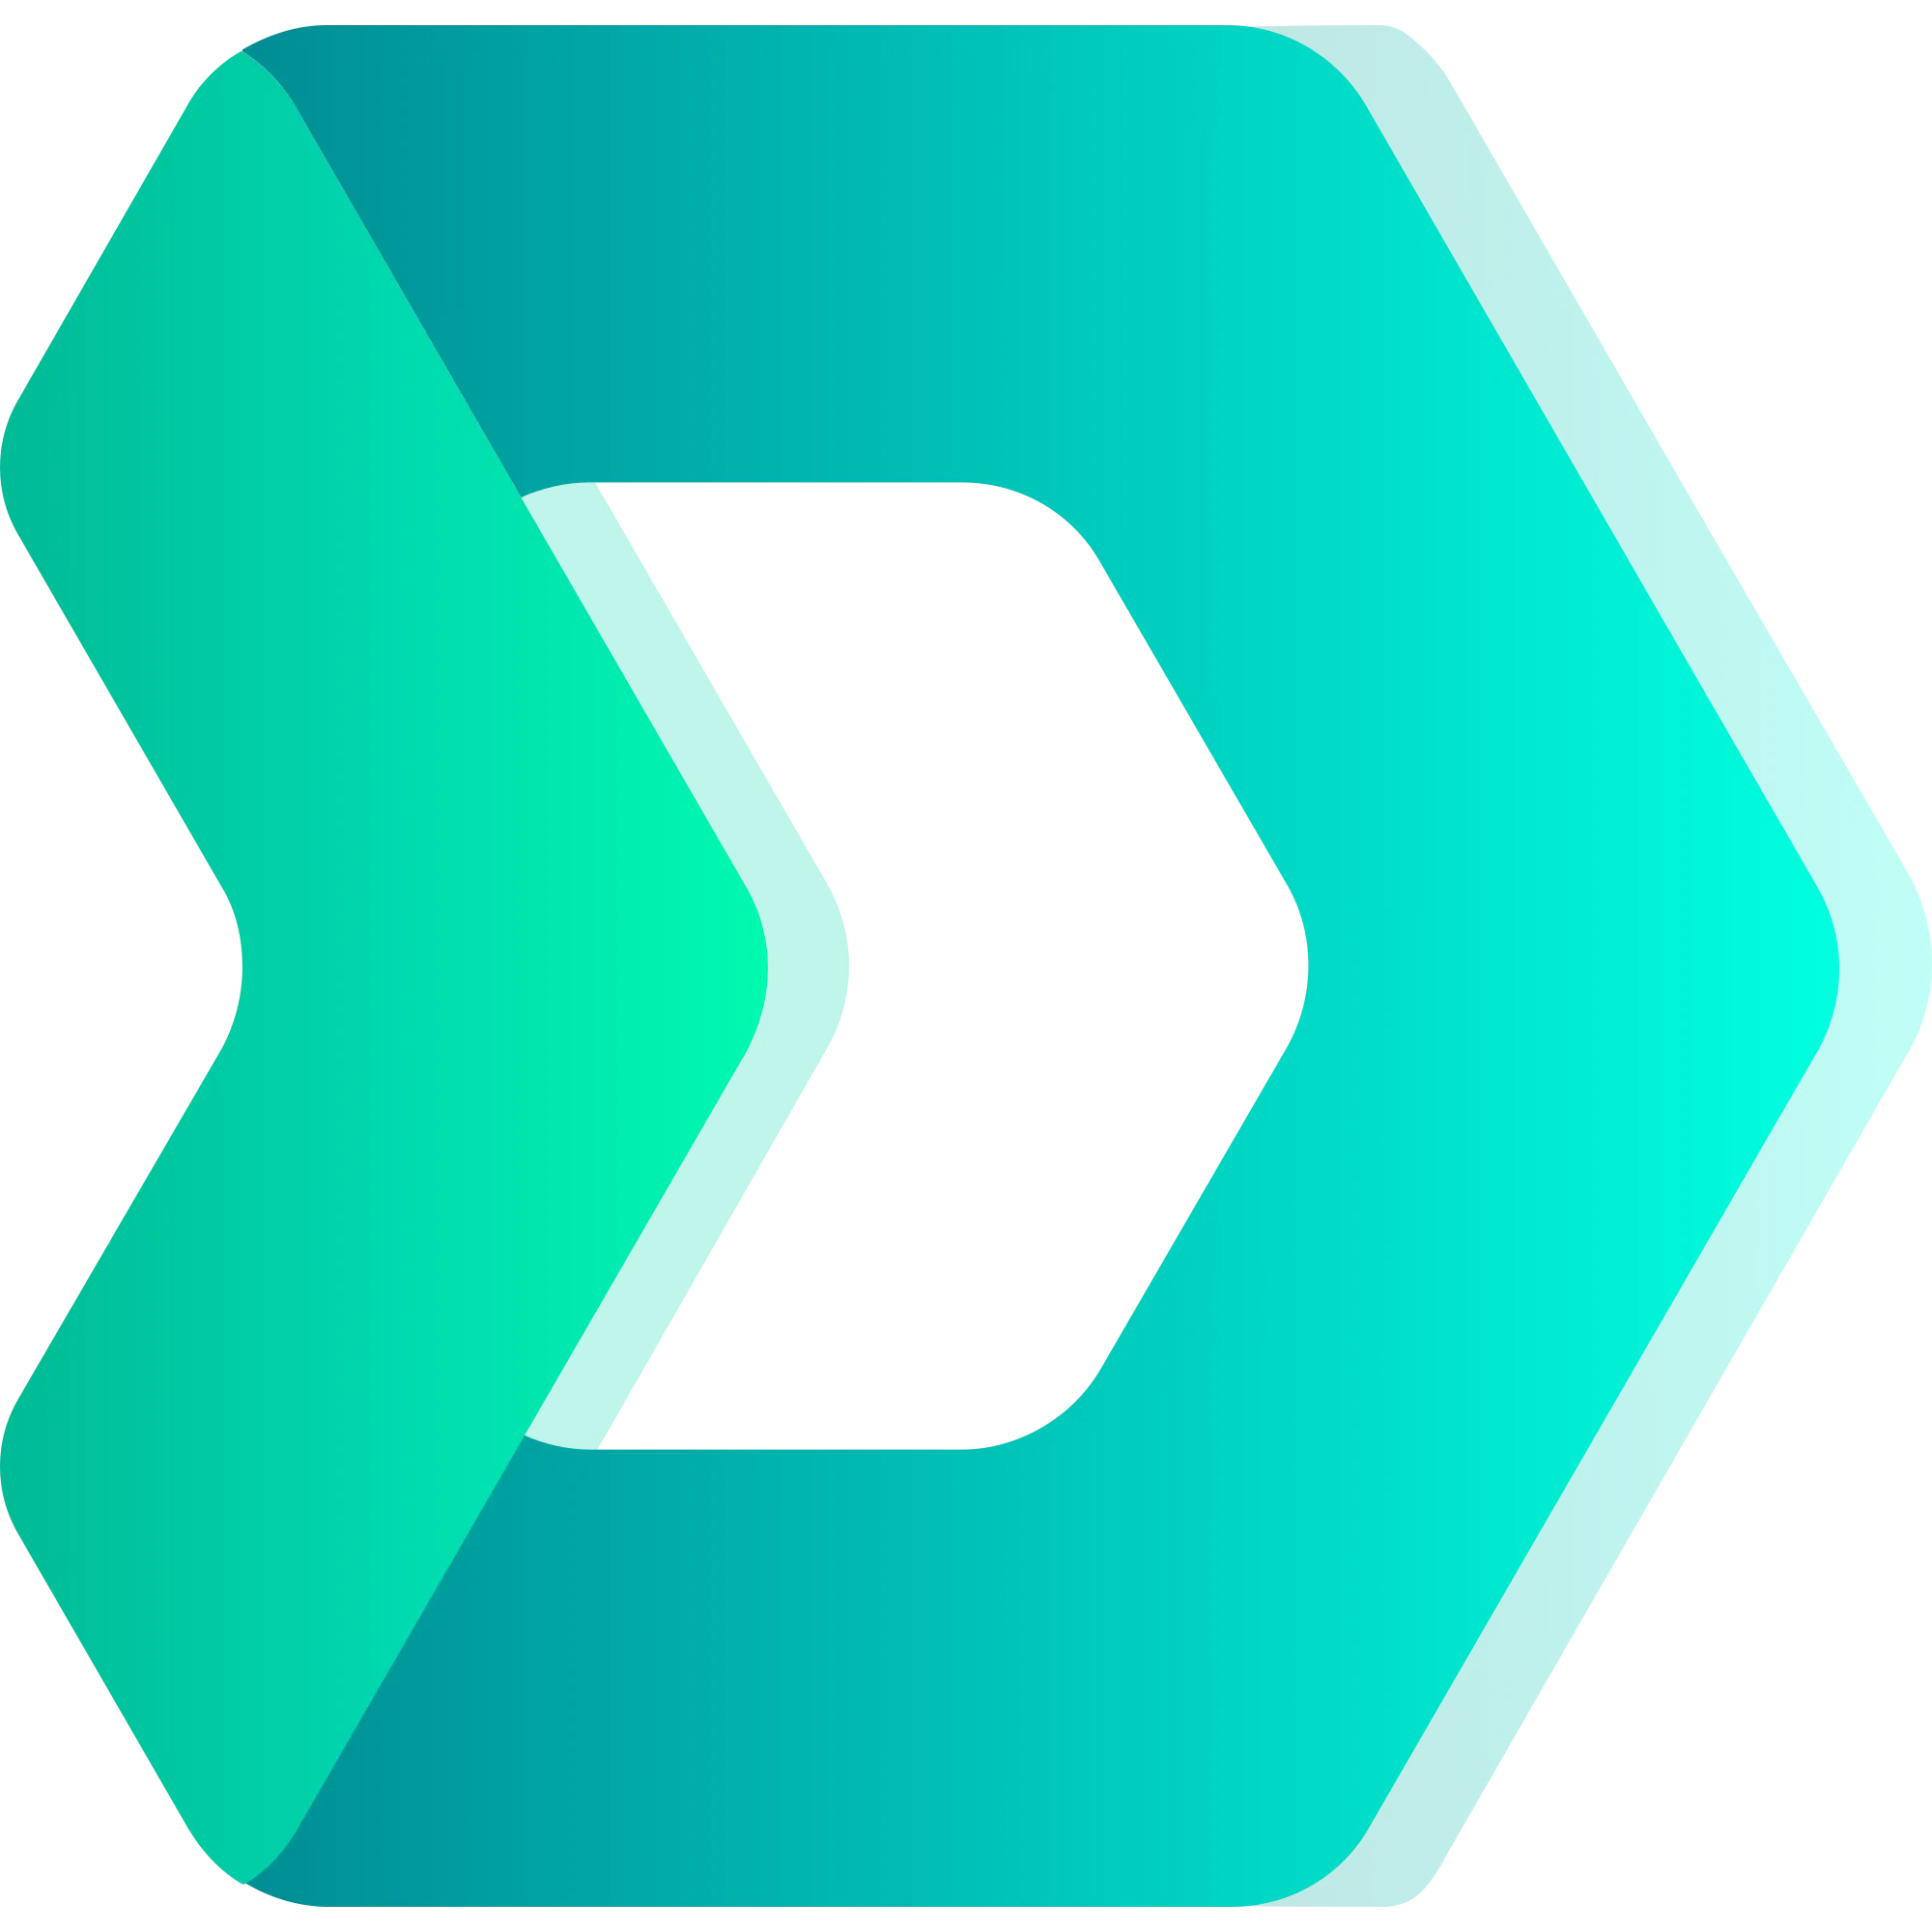 DMarket logo in png format